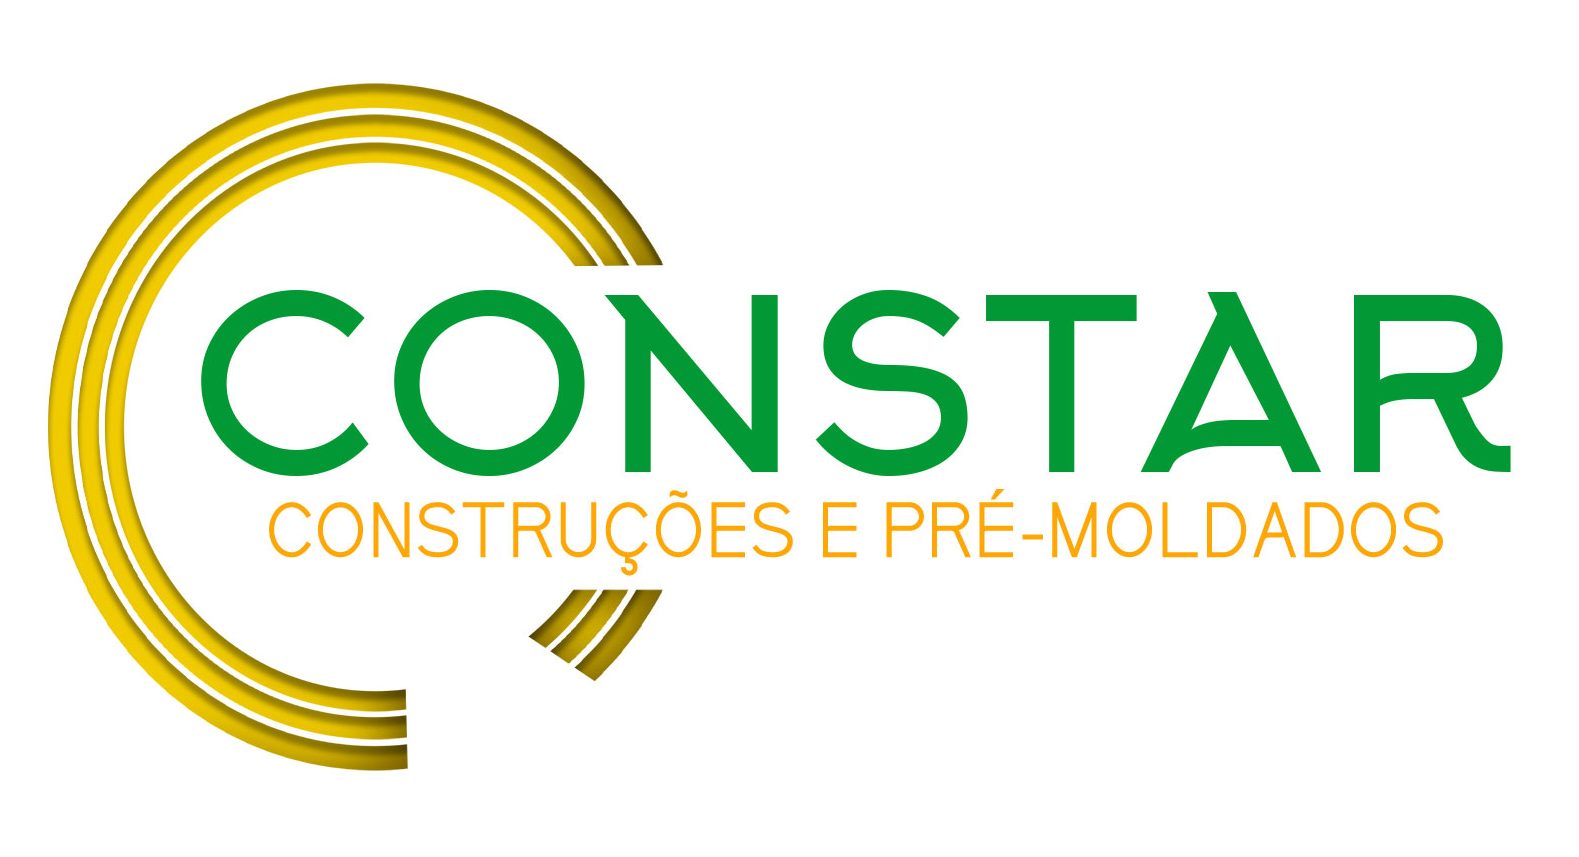 CONSTAR | Construções e Pré-moldados